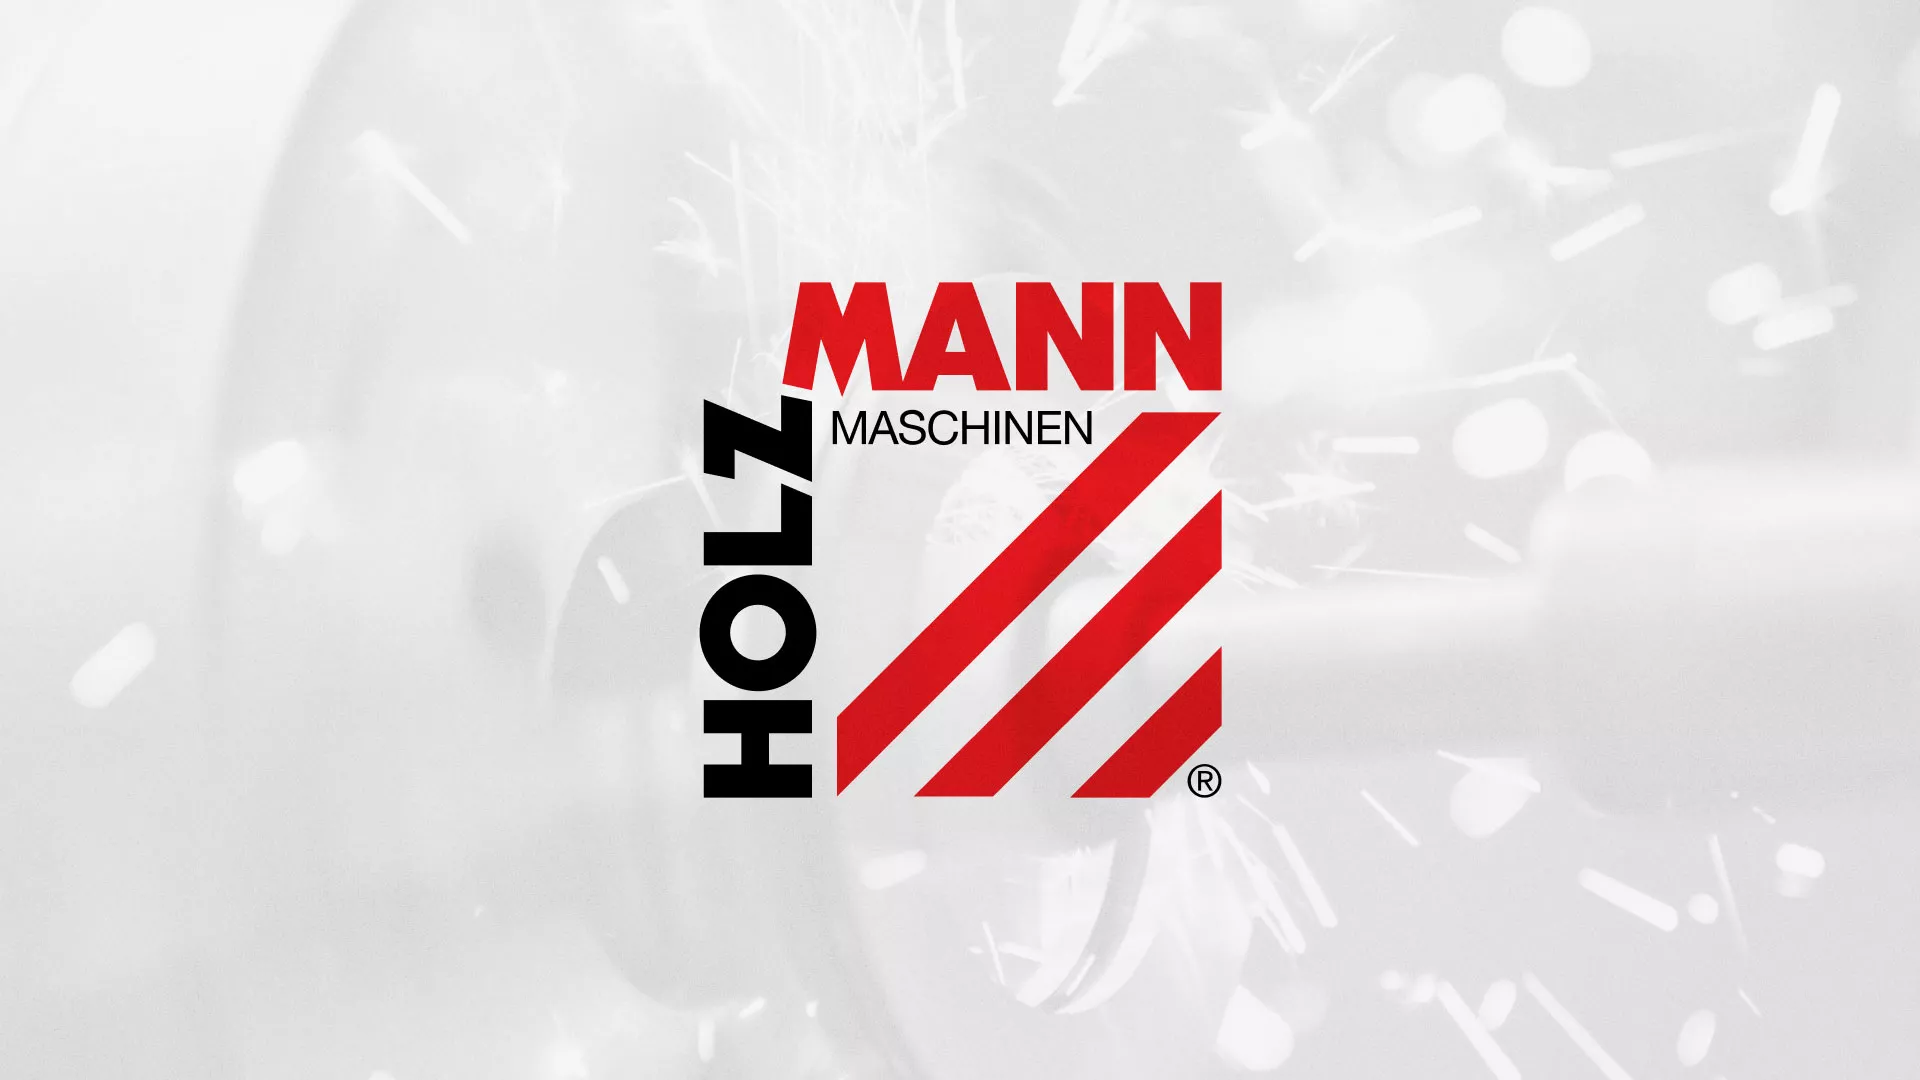 Создание сайта компании «HOLZMANN Maschinen GmbH» в Починке